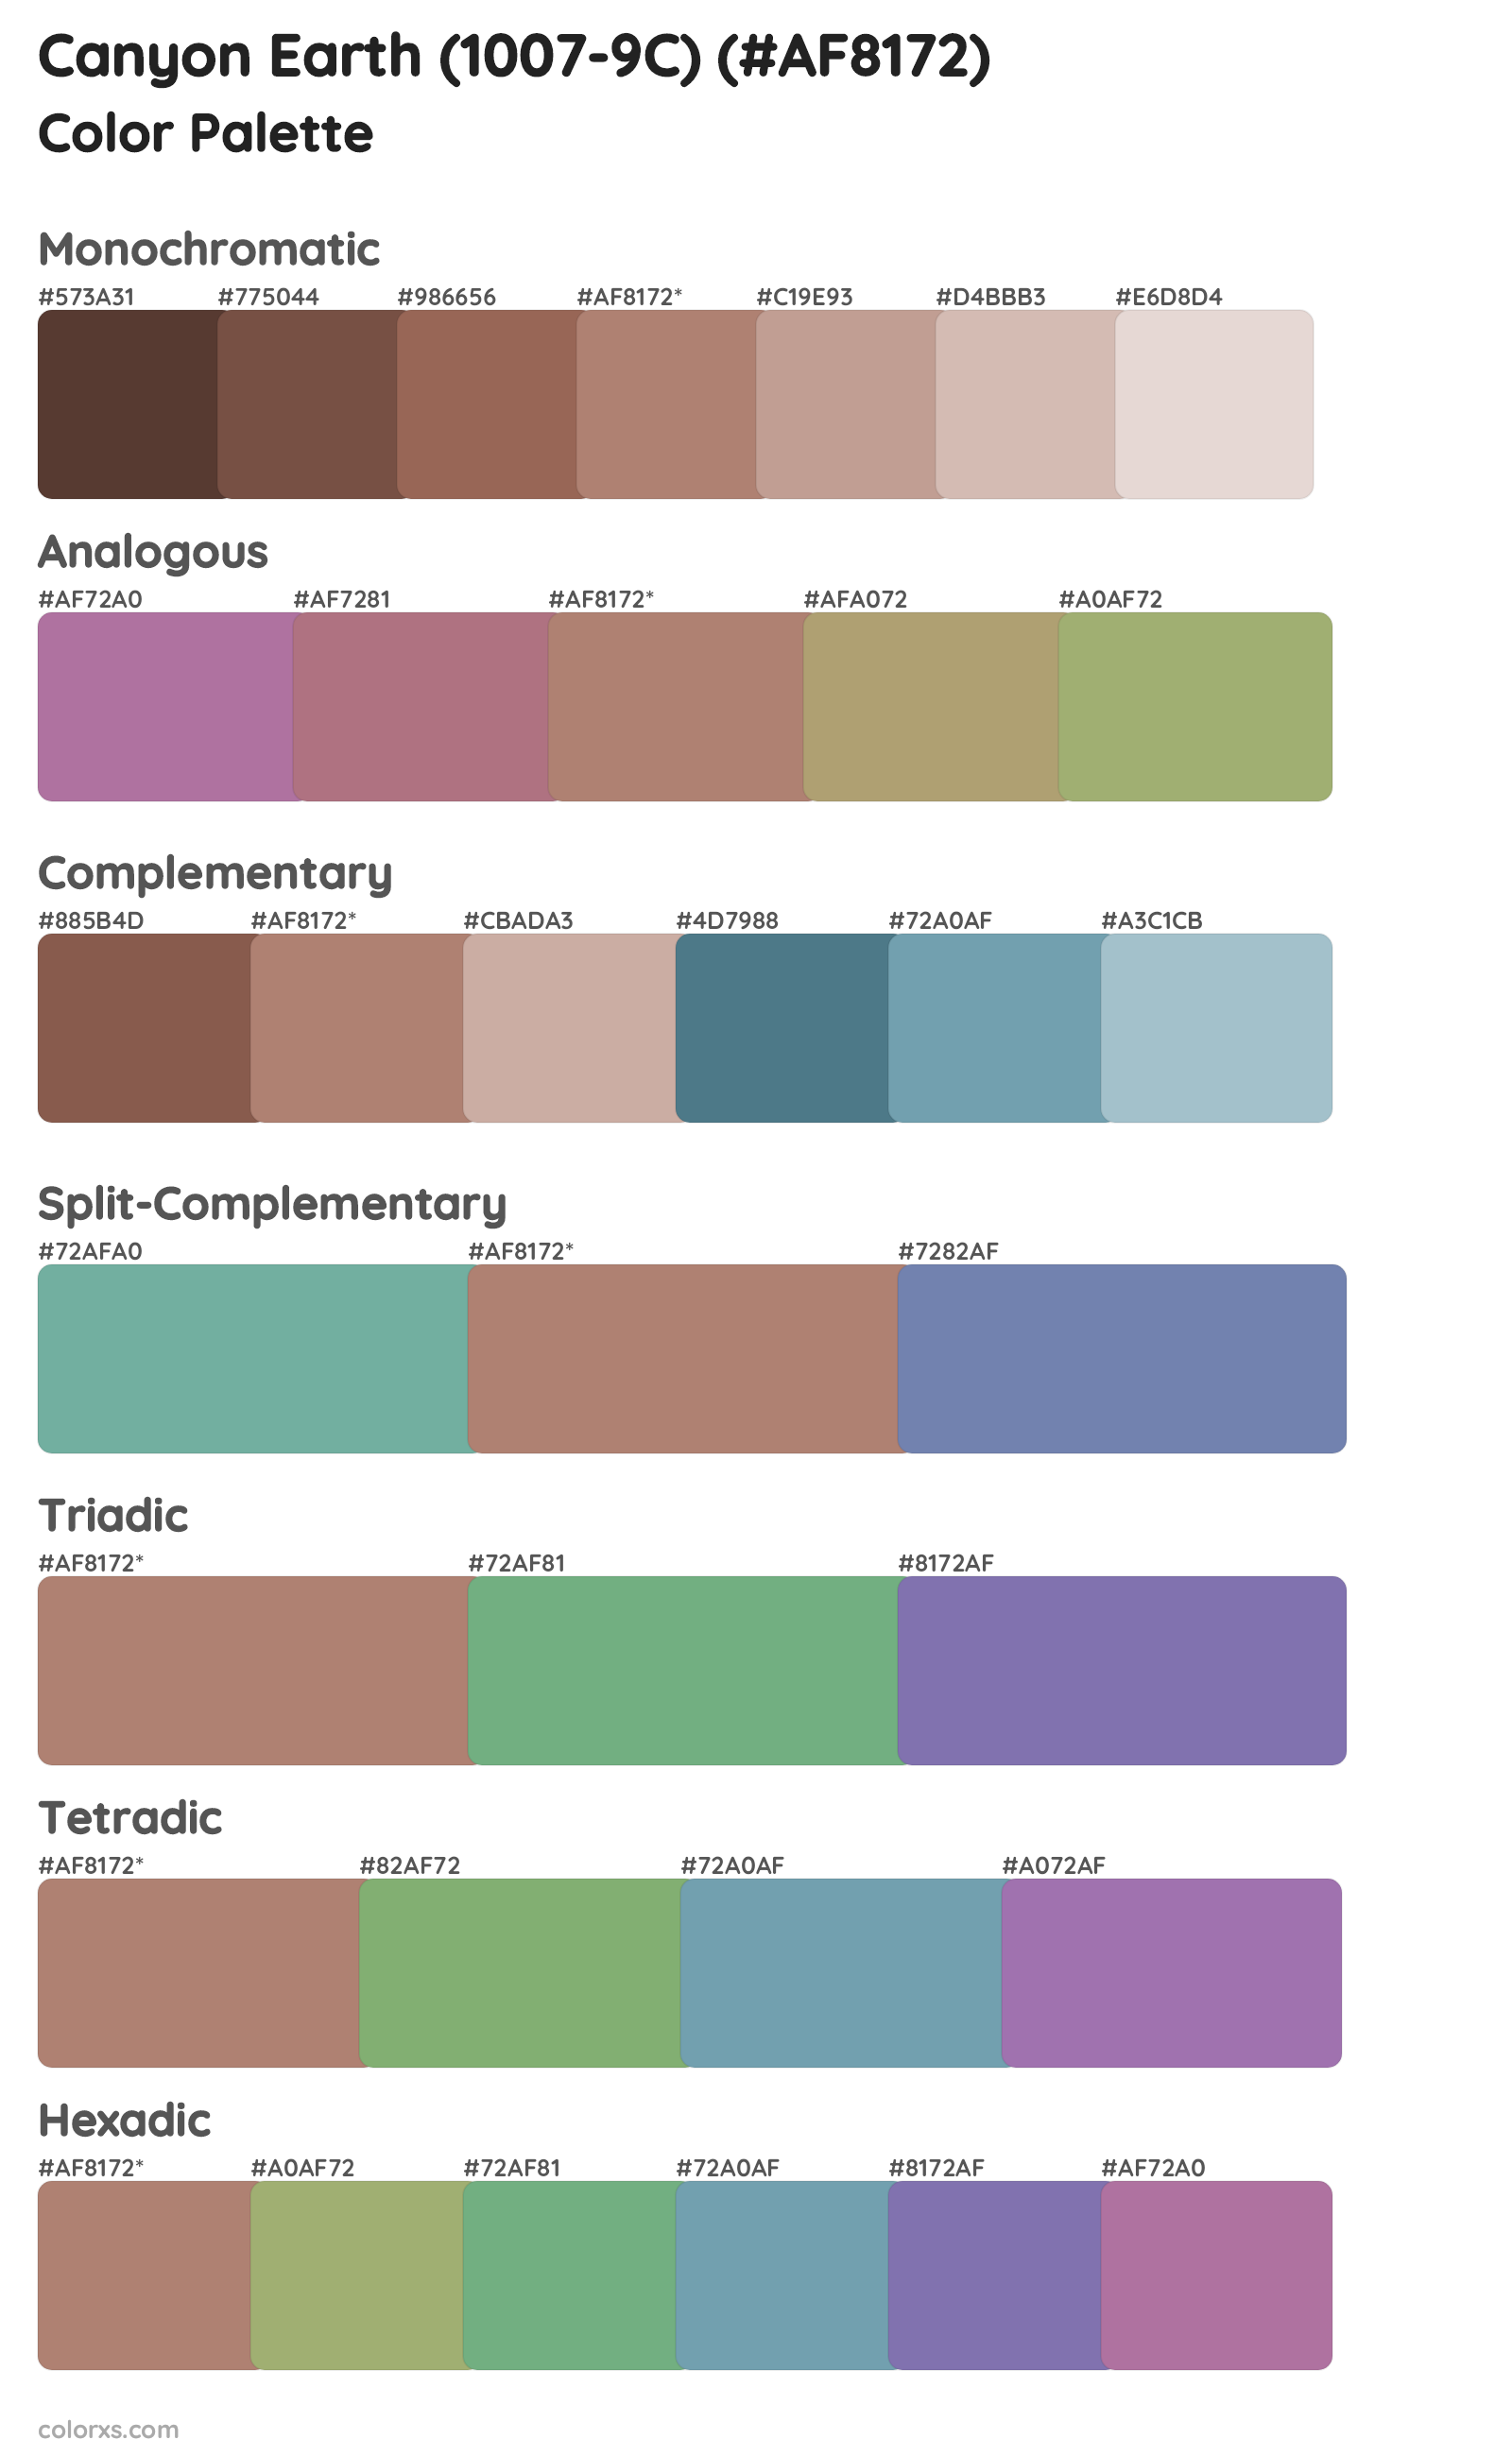 Canyon Earth (1007-9C) Color Scheme Palettes